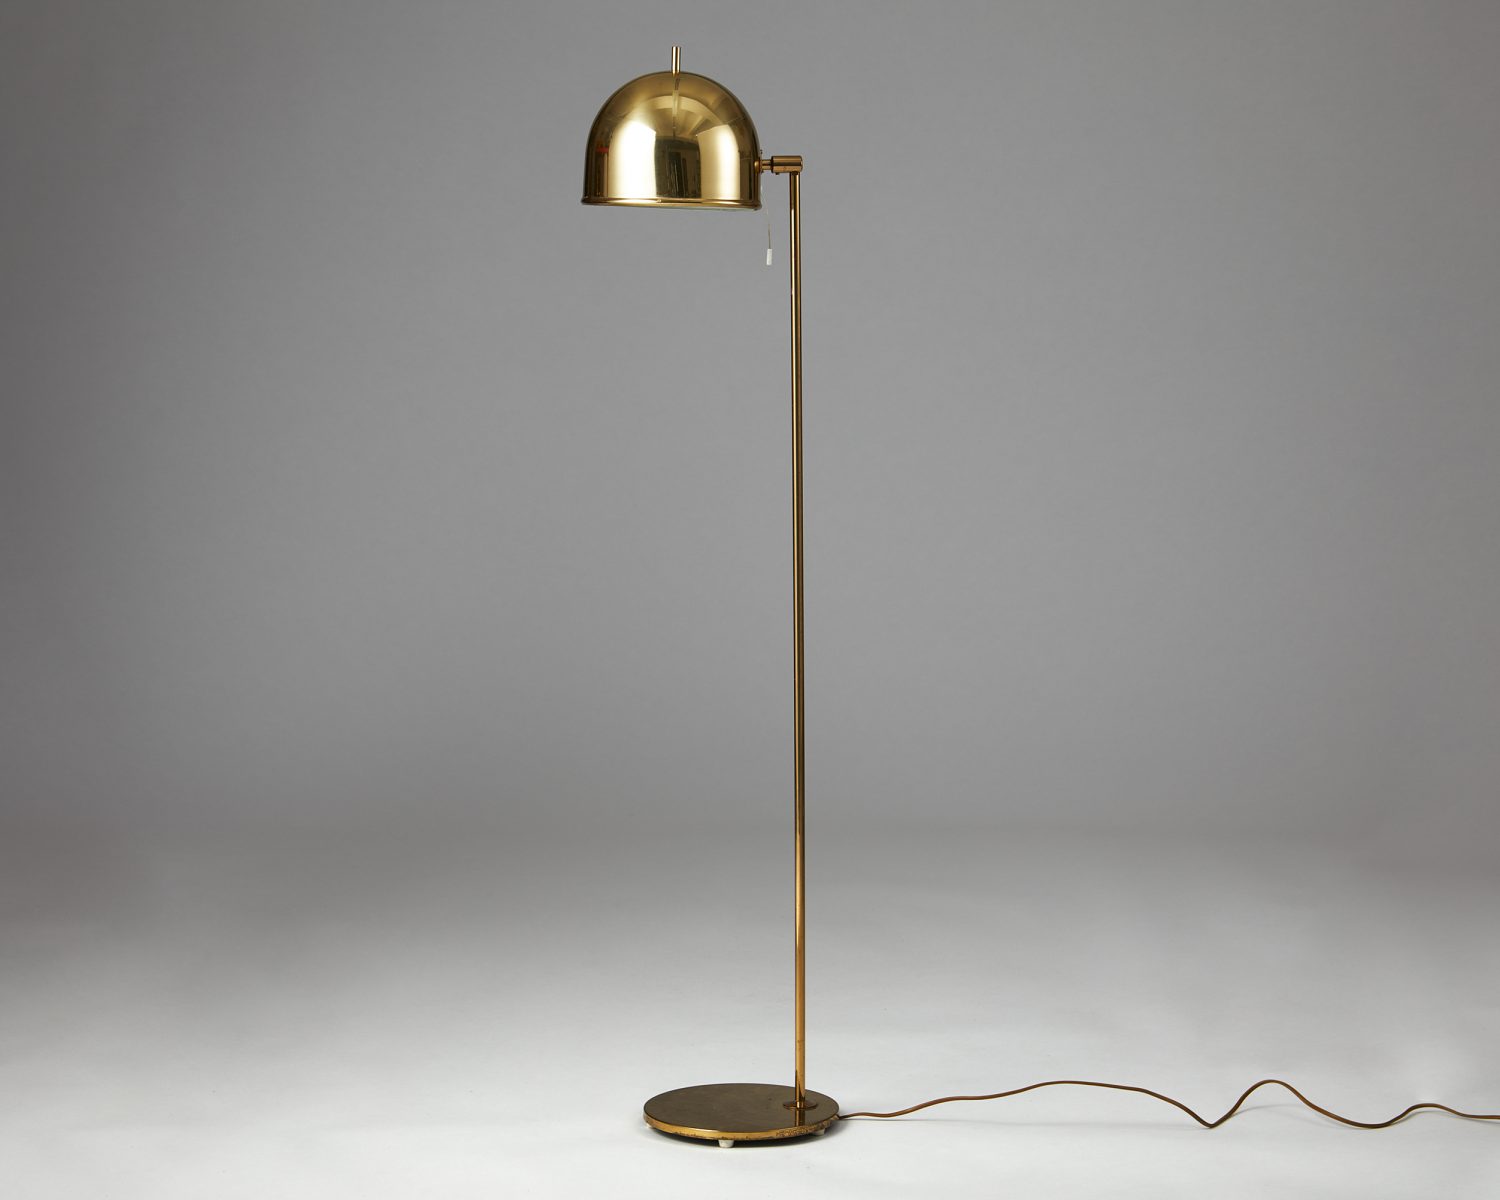 Floor lamp model G-075 designed by Eje Ahlgren for Bergboms 